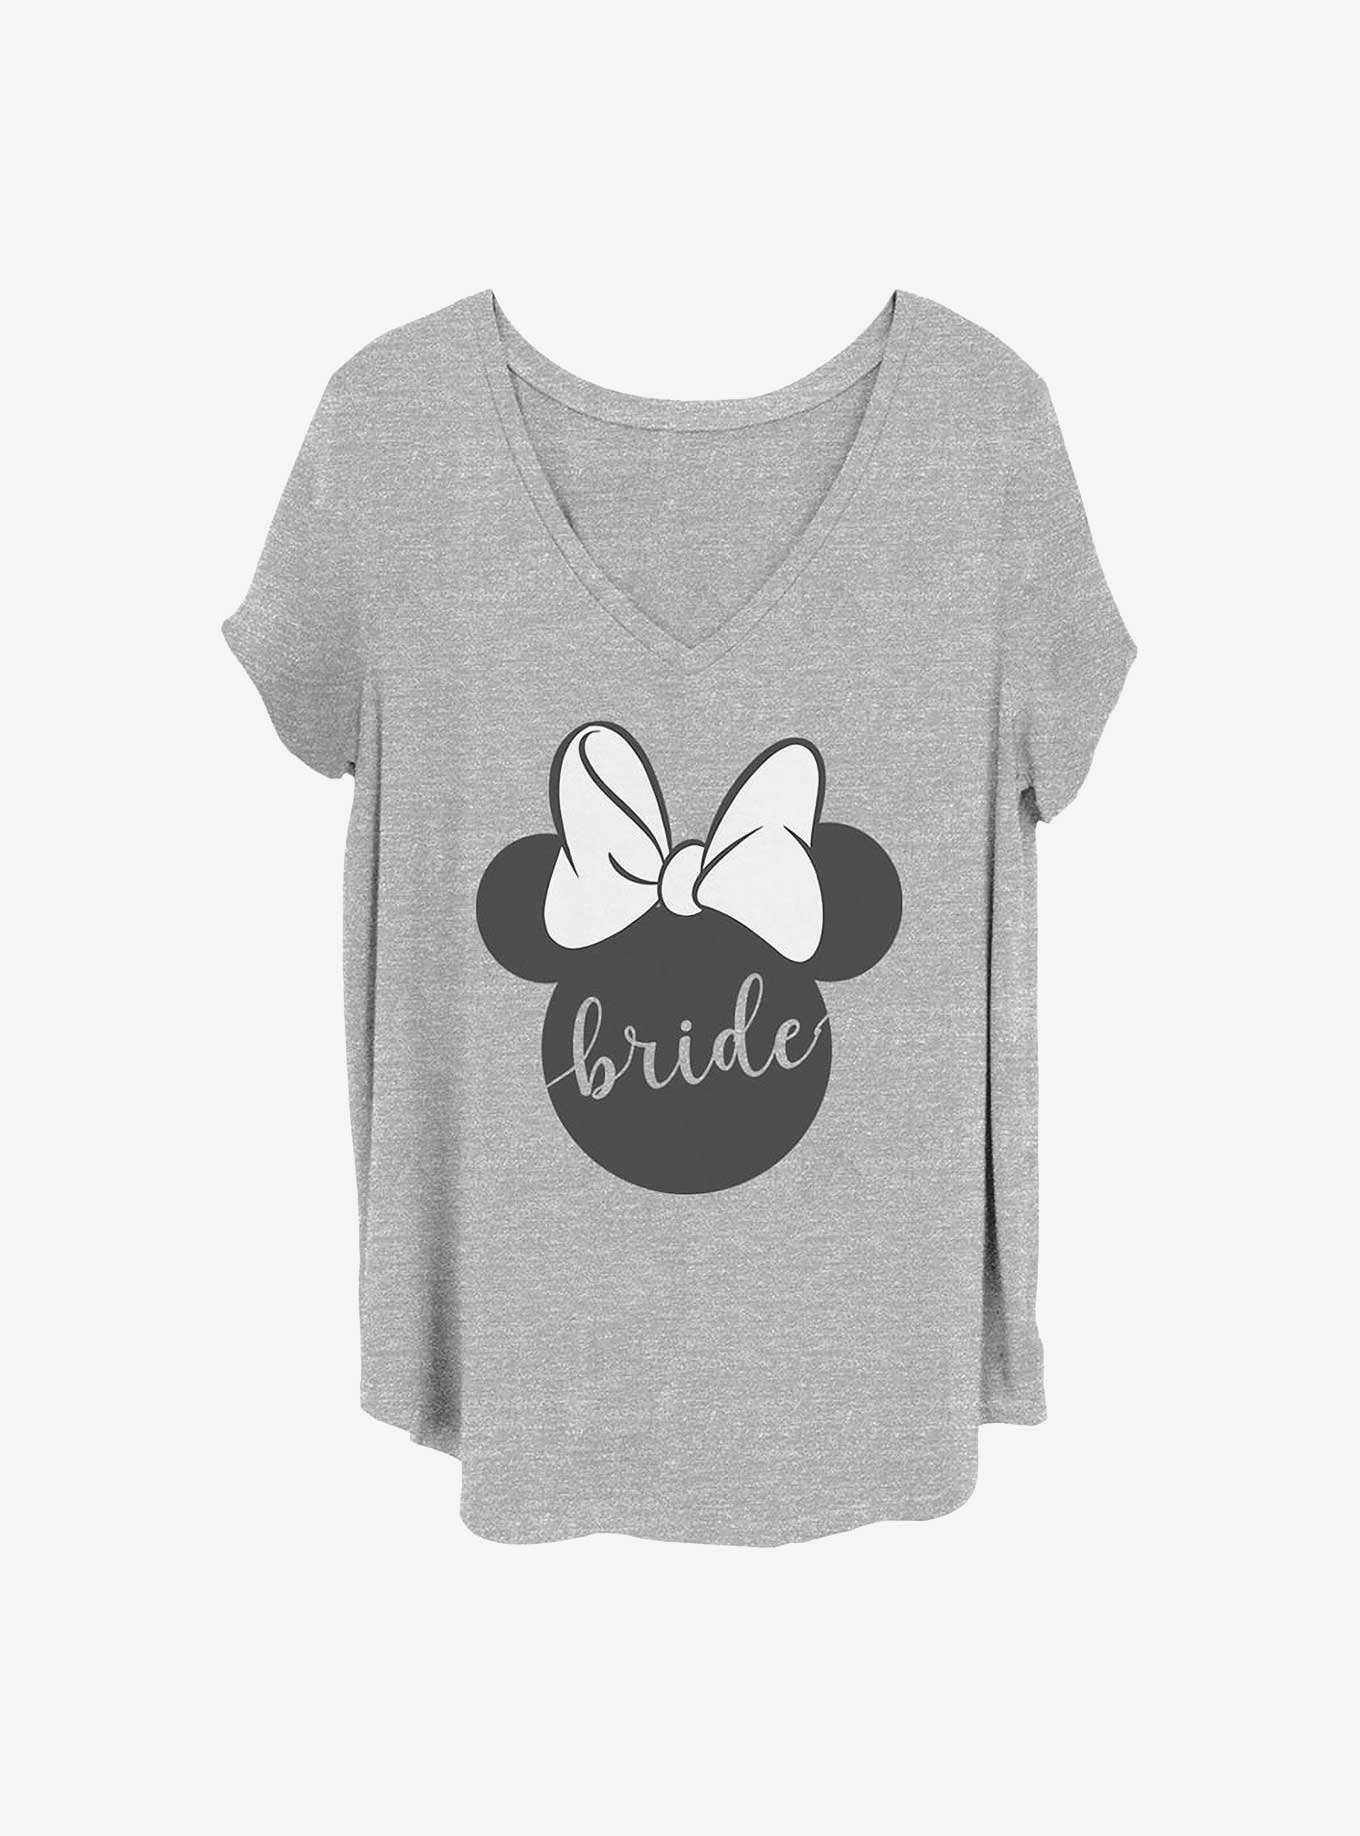 Disney Minnie Mouse Bow Bride Girls T-Shirt Plus Size, , hi-res